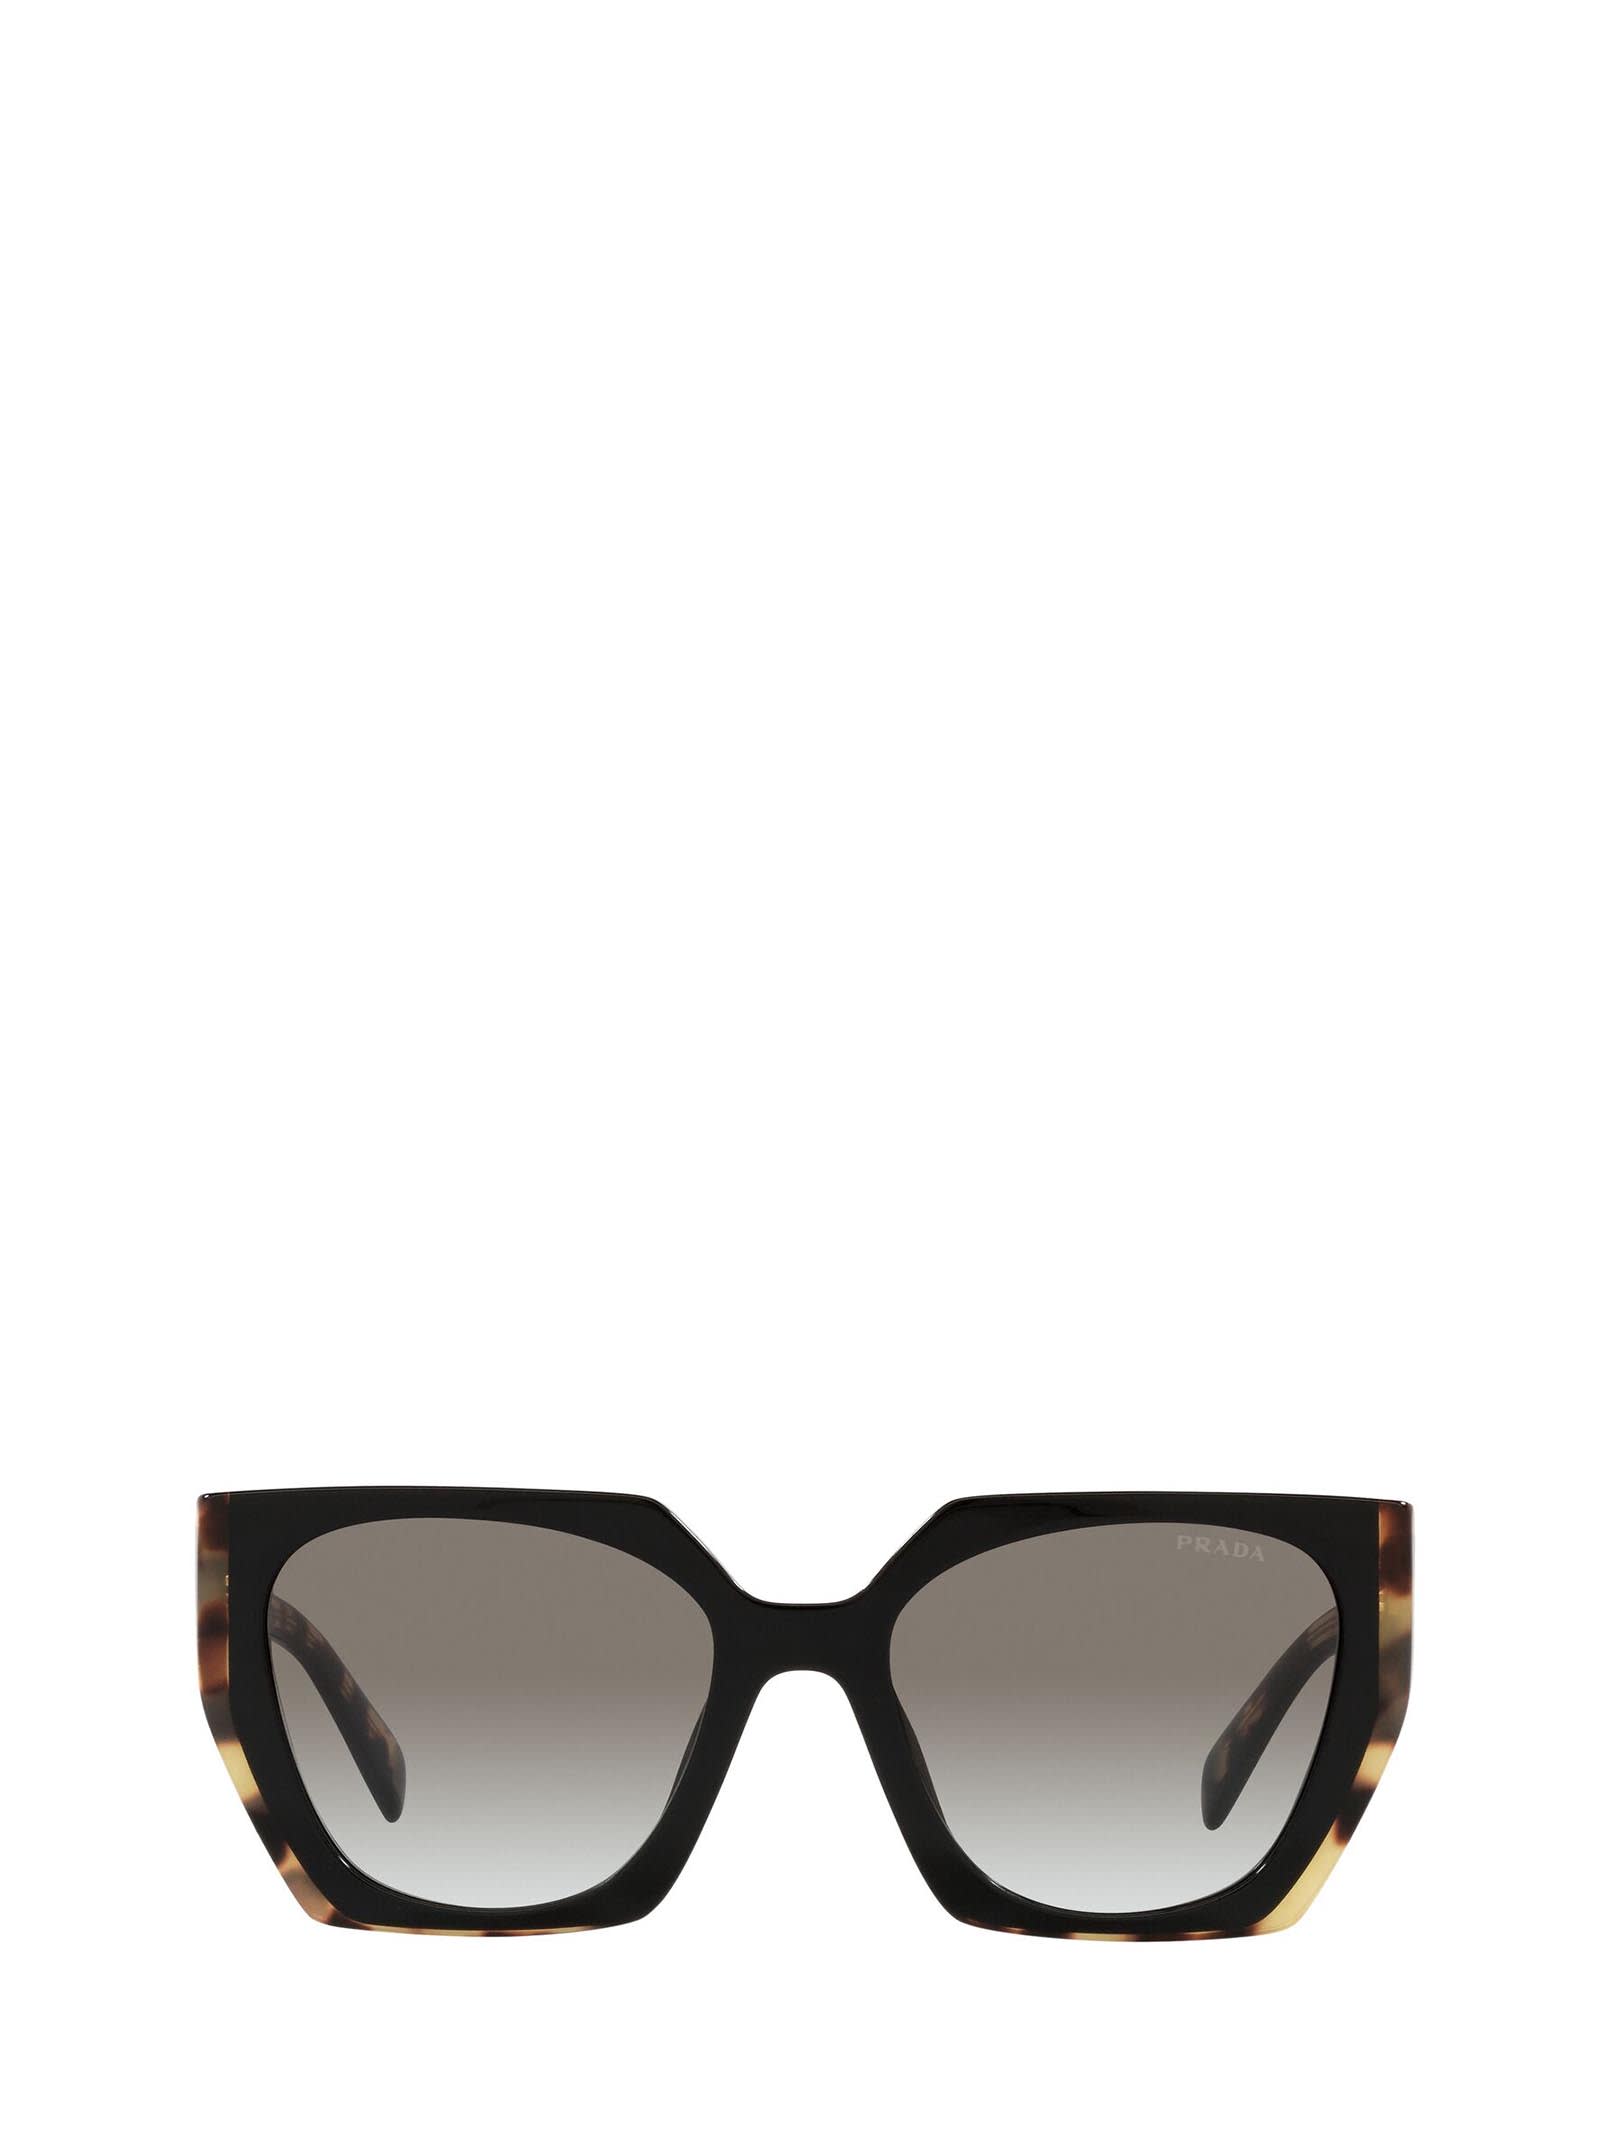 Pr 15ws Black/ Medium Tortoise Sunglasses